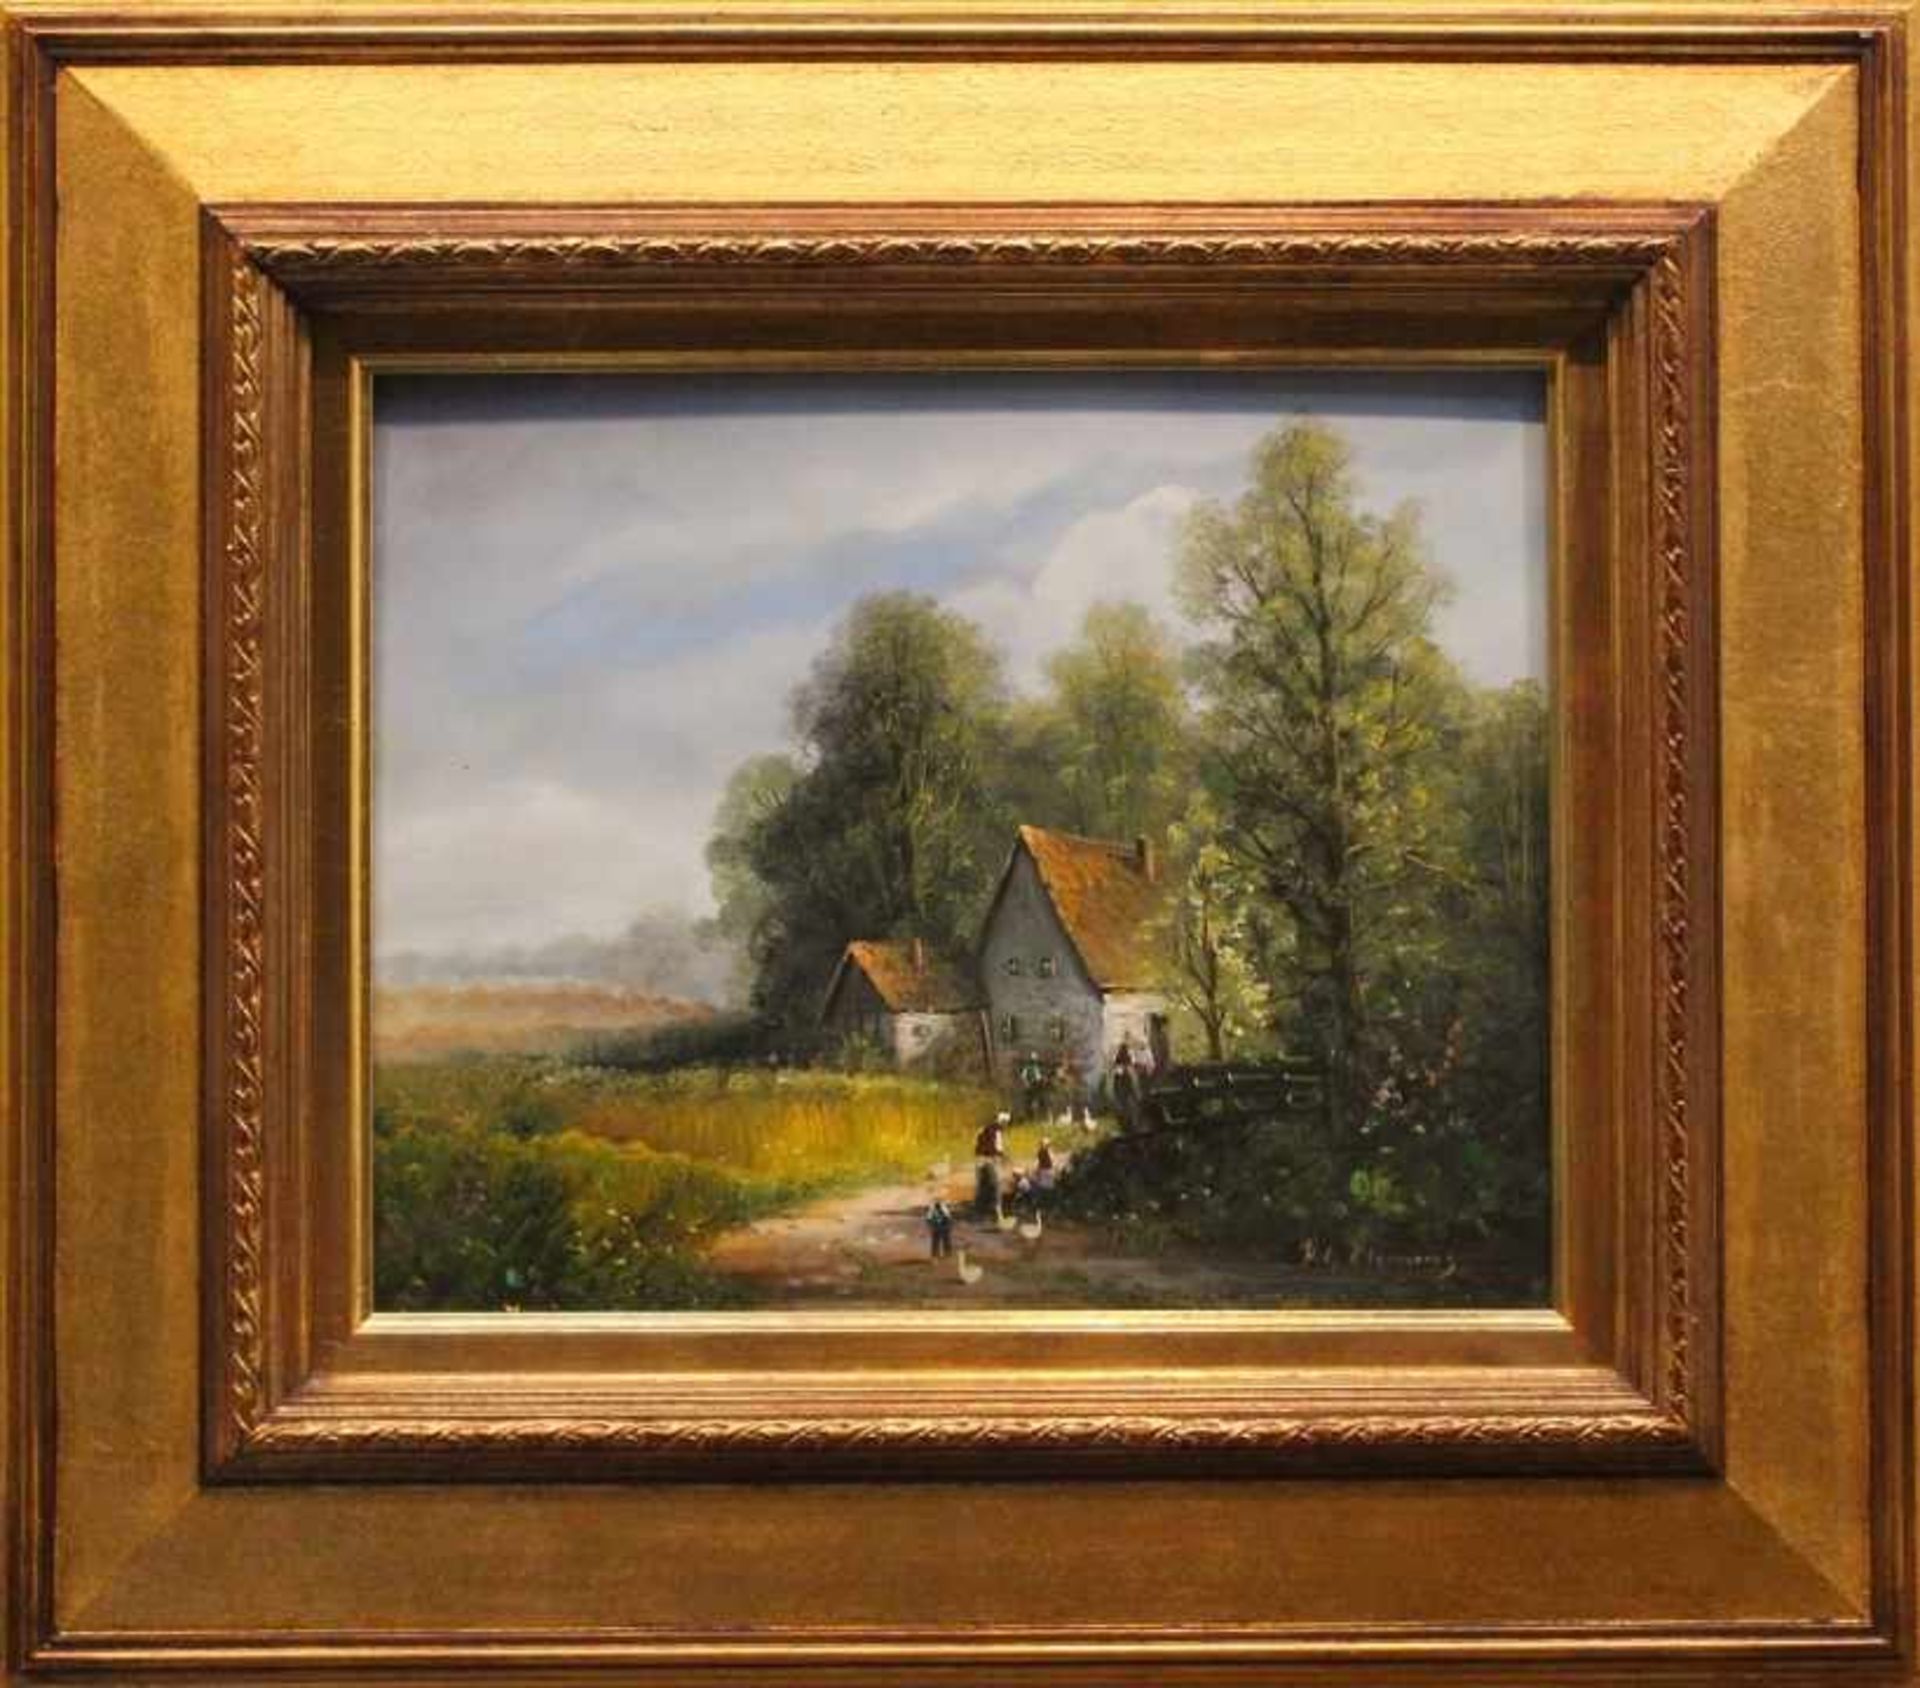 Gemälde - H.G. Clemens (Nürnberg 1941 - 2009) "Landschaft mit Bauernhof, im Vordergrund Personen und